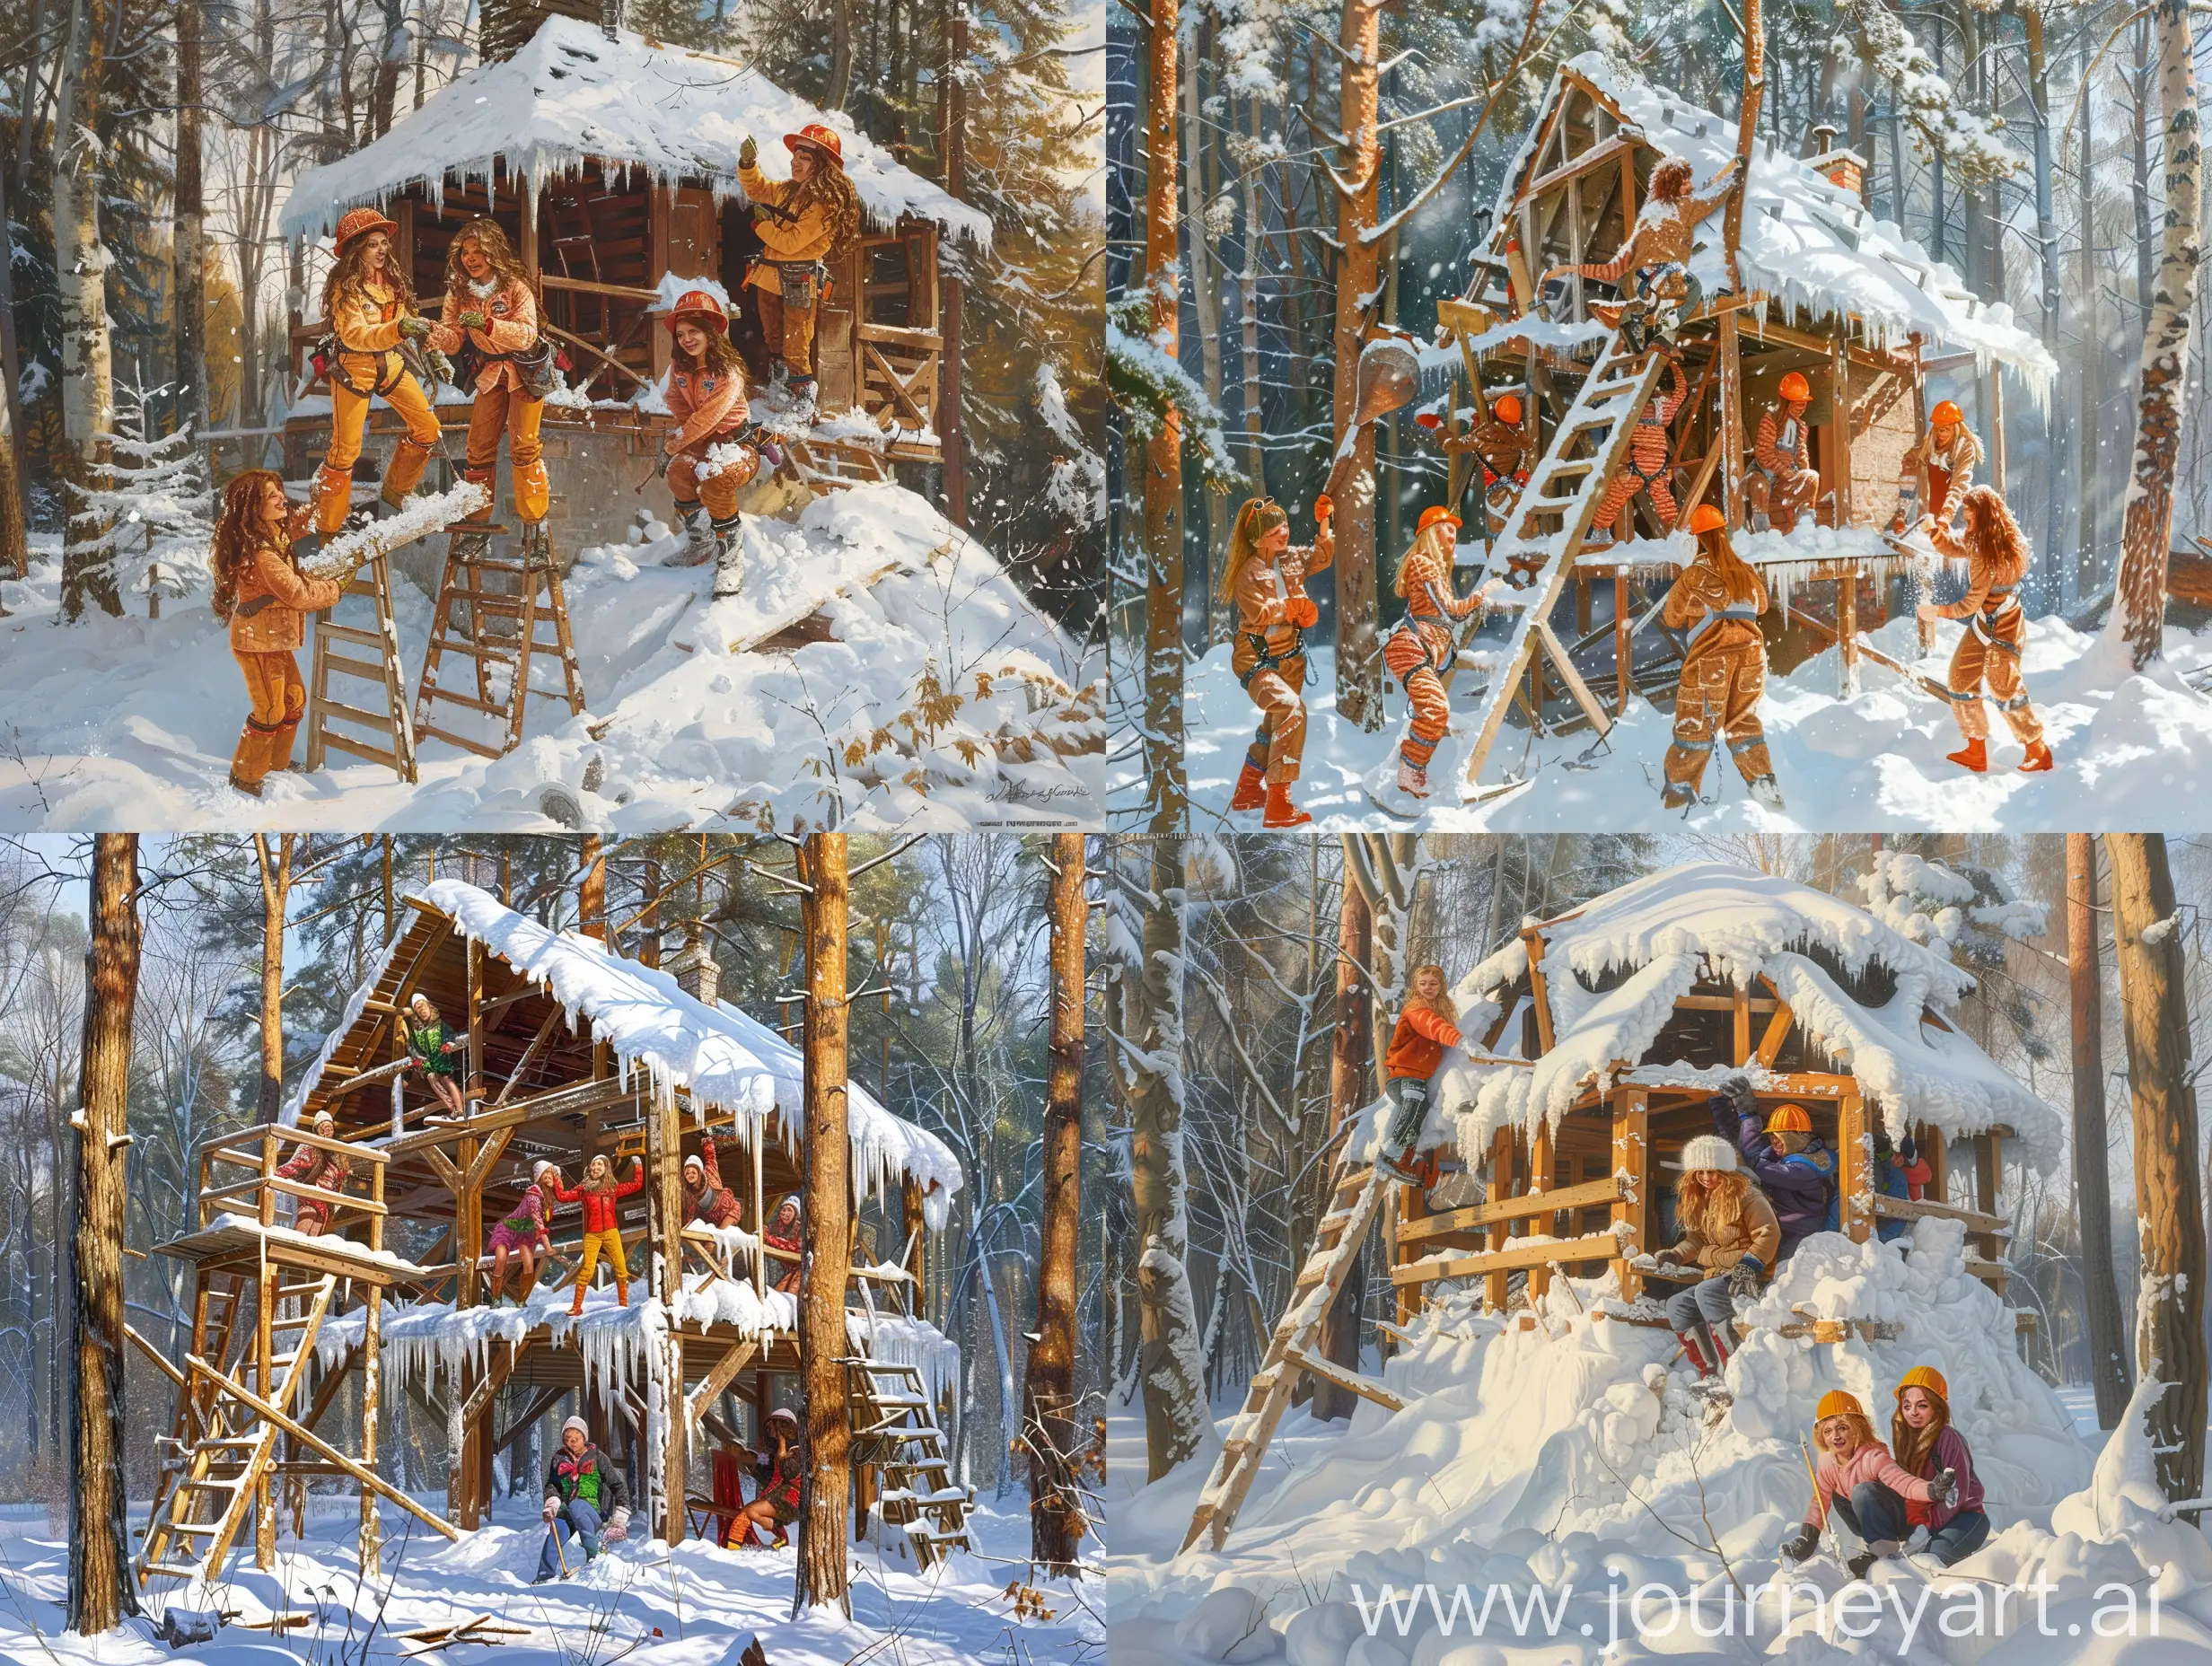 Фотореализм. Группа Спайс герлс одетая как строители зимой весело и шутливо строят заснеженный двухэтажный дом в лесу. Веселое настроение, яркий полдень.